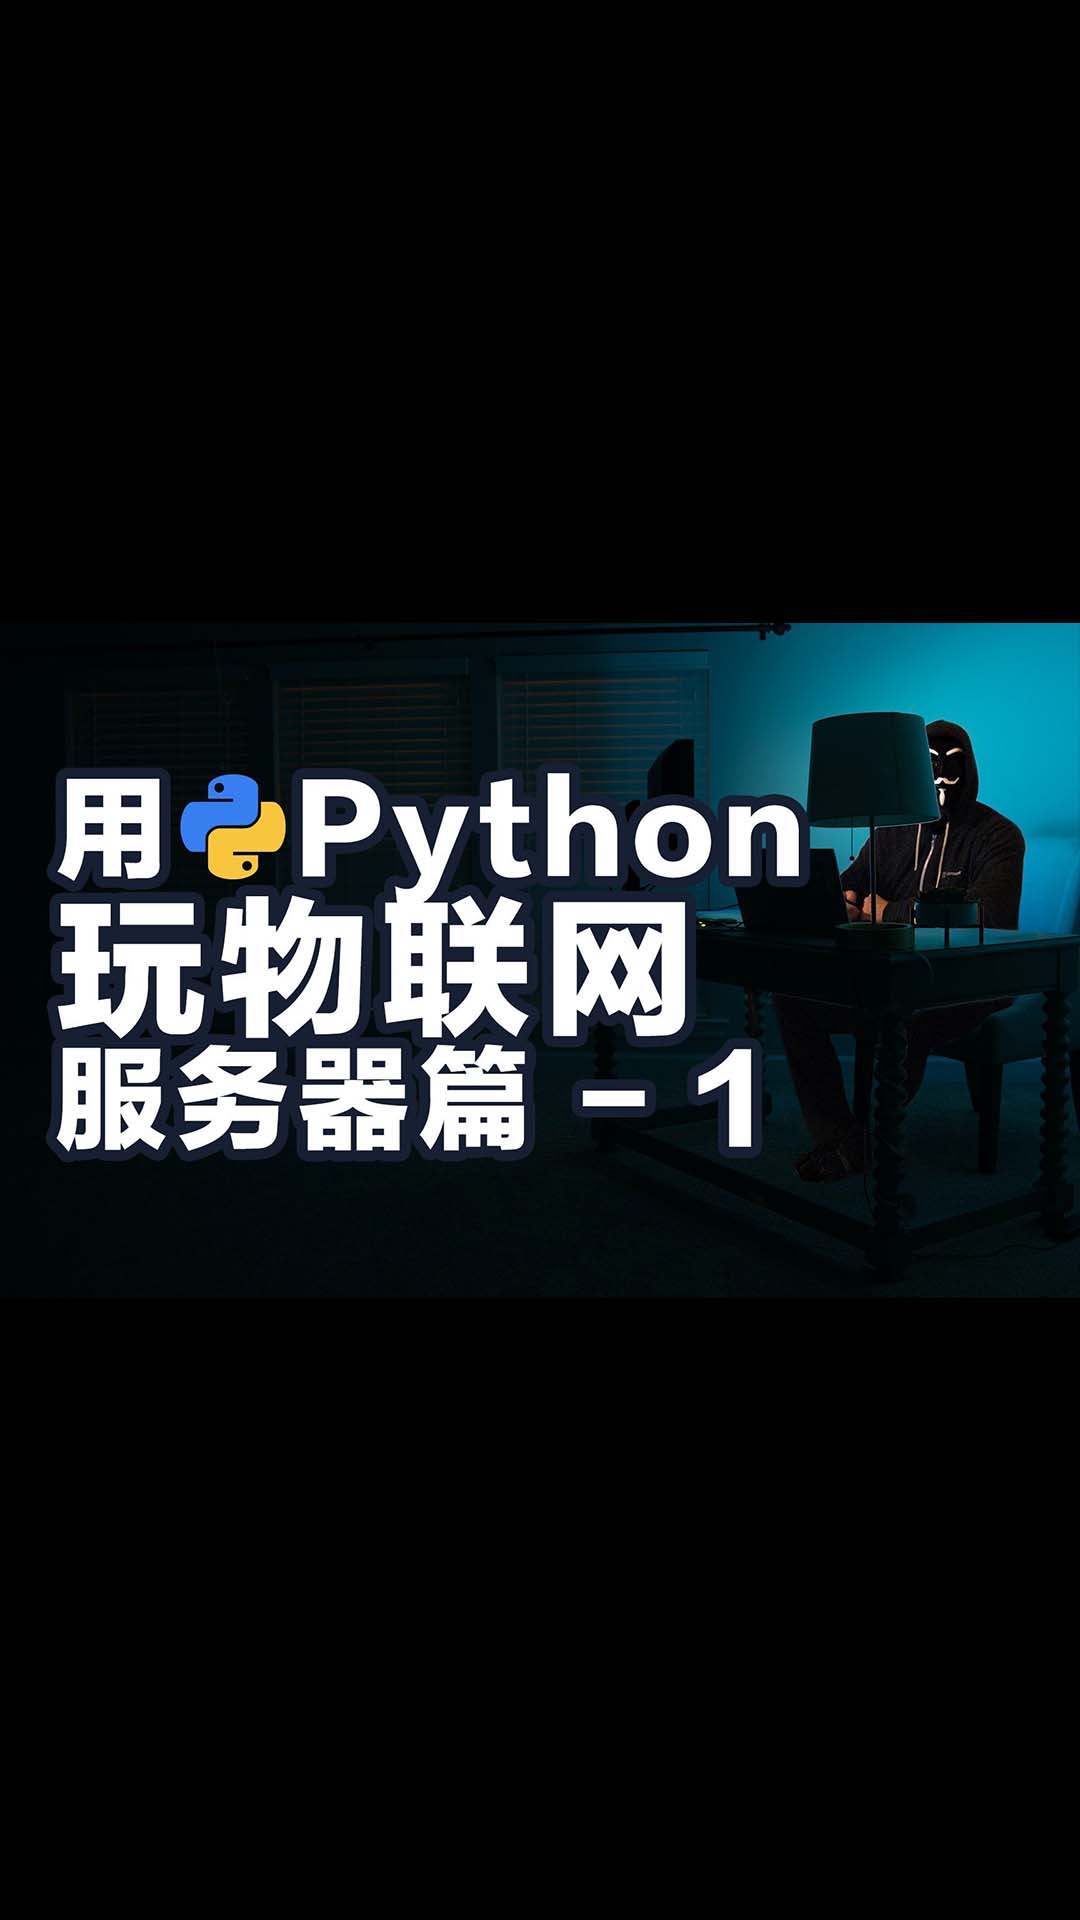 保姆教程 如何用Python玩物联网 架设服务器开发接口 之一